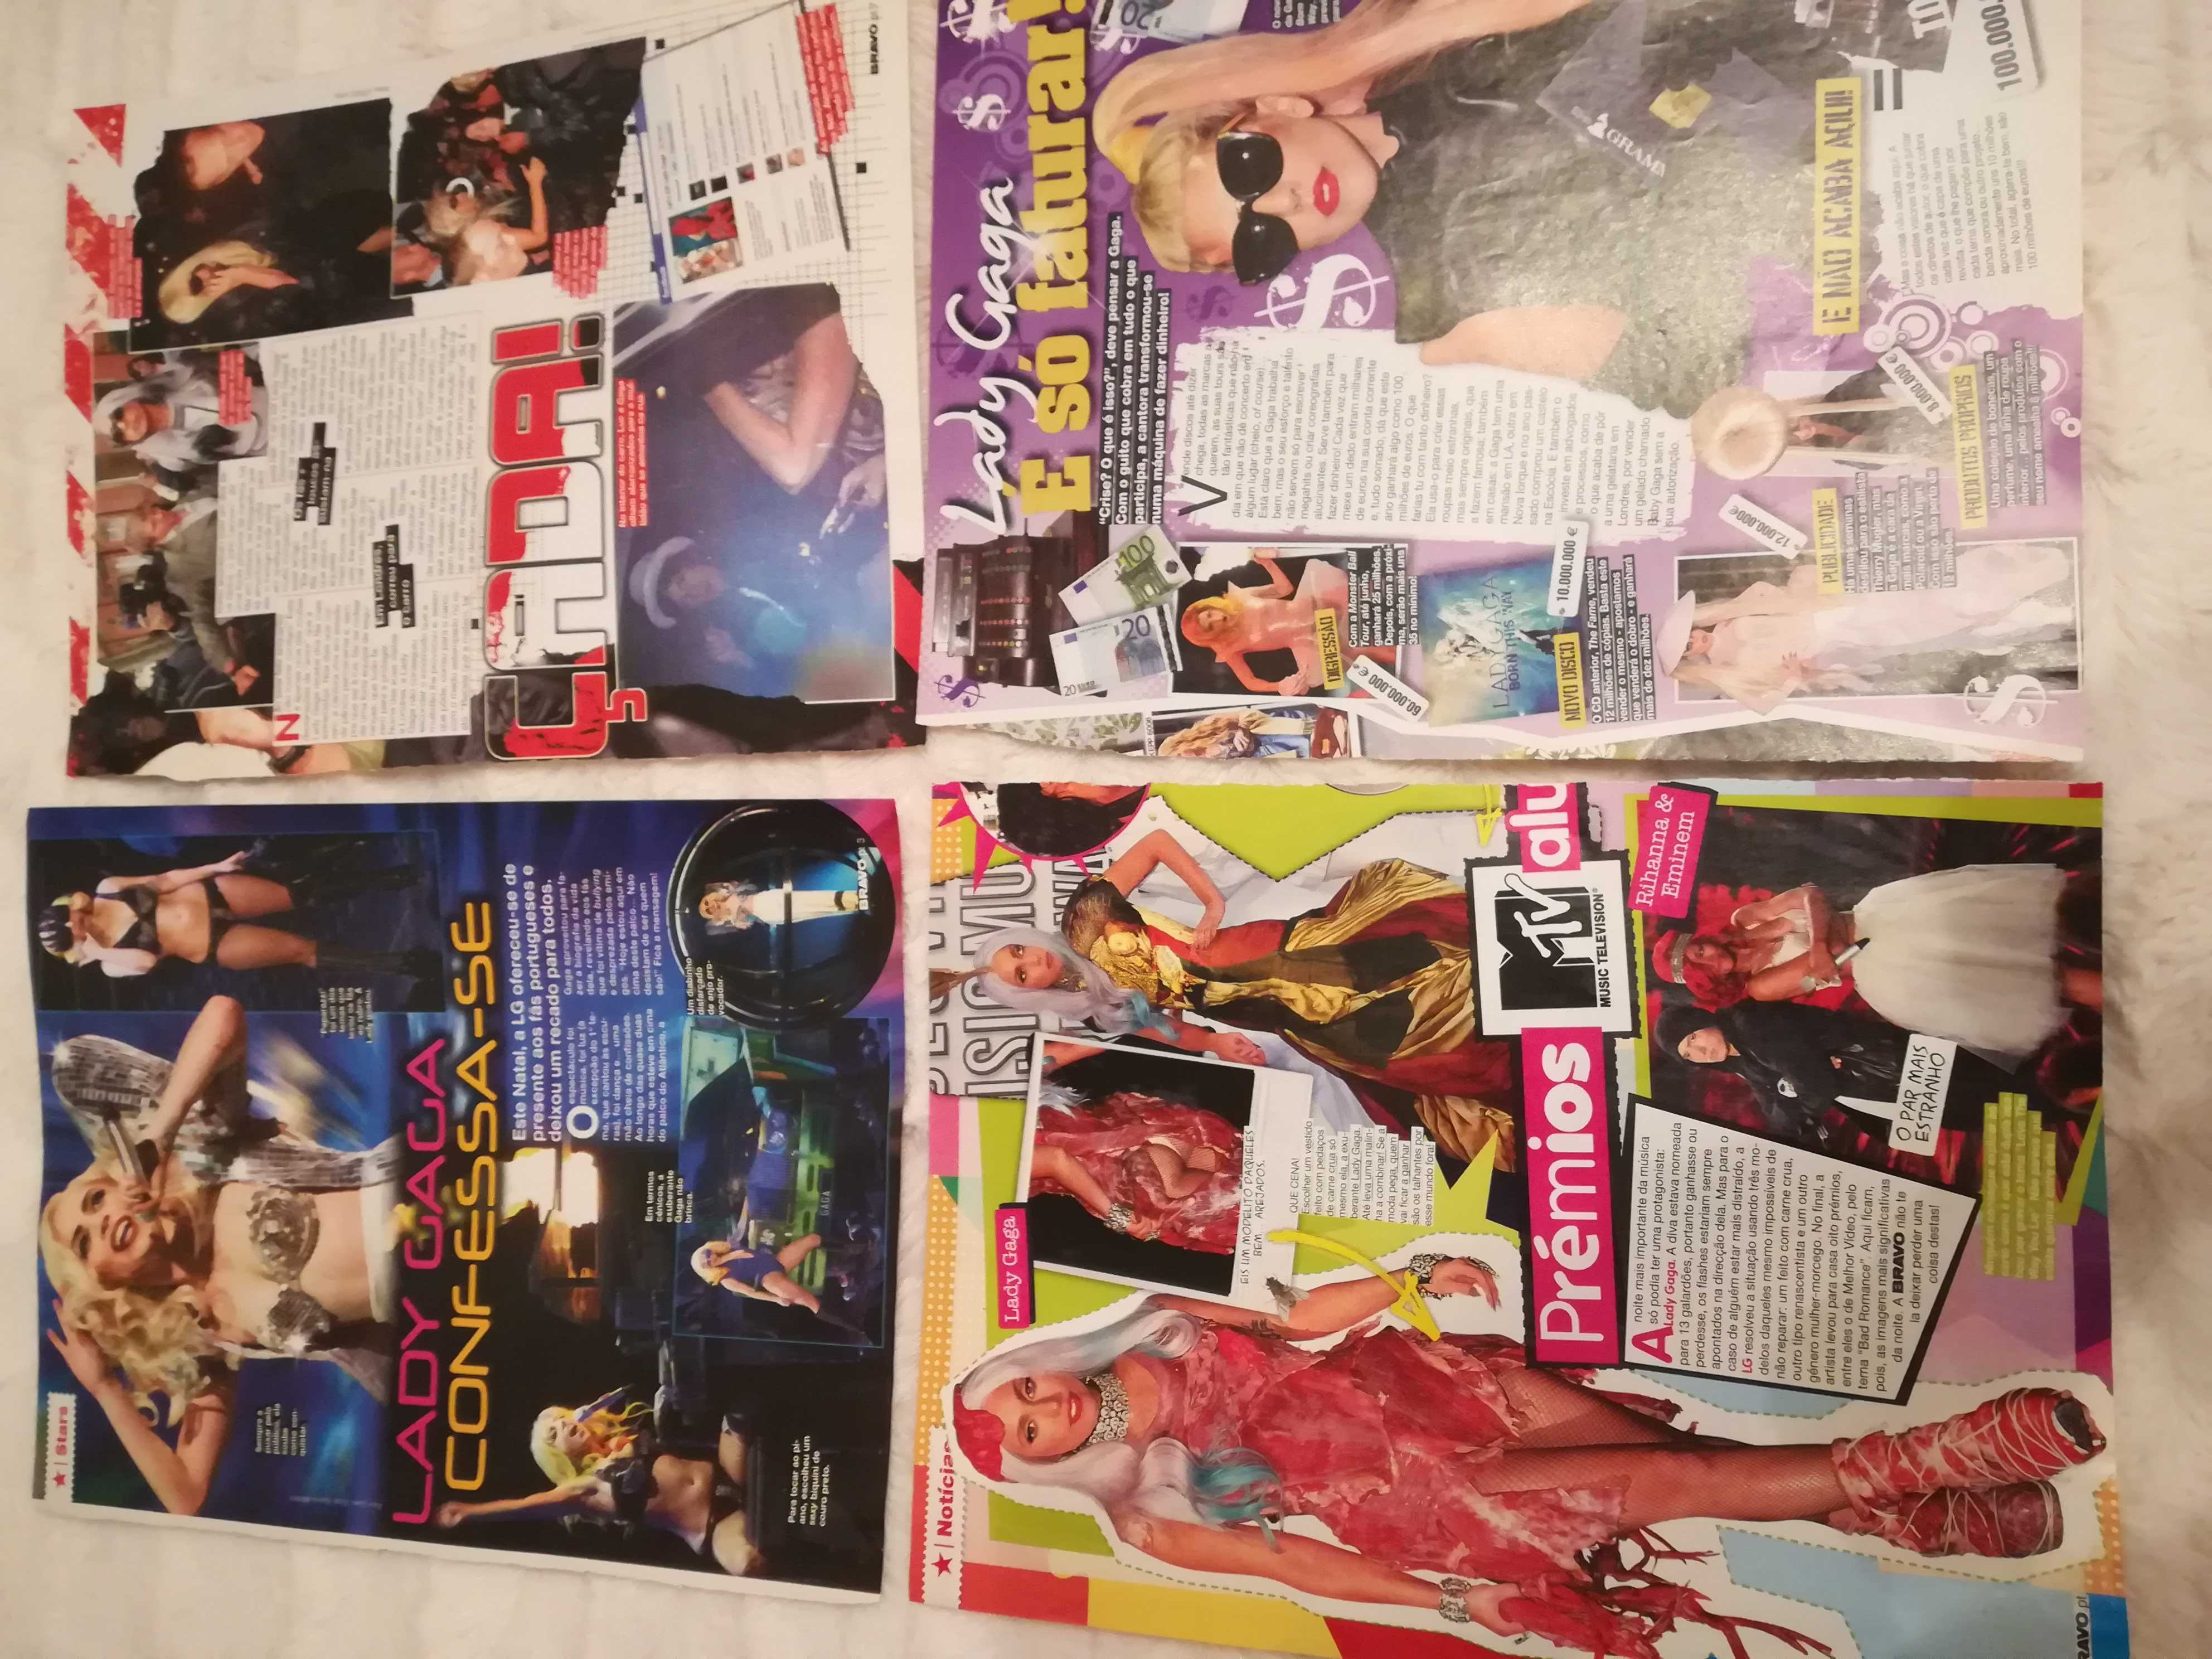 Páginas de Revistas e Recortes da Lady Gaga - Colecção